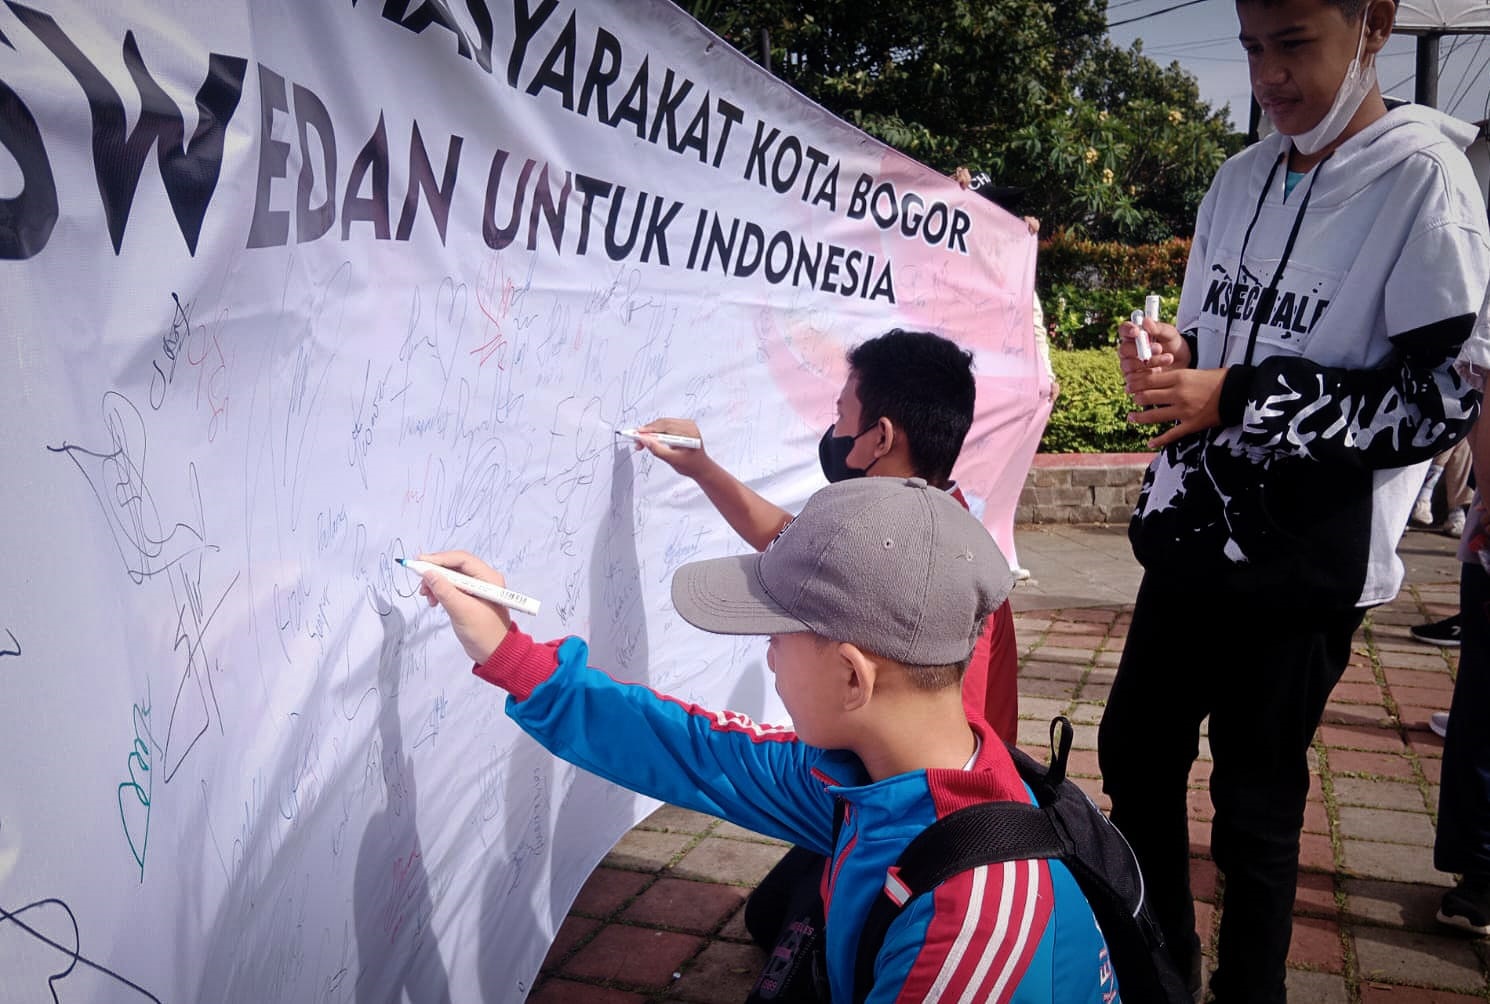 Gaungkan Anies Capres, Jarnas Beraksi di Bogor Bentangkan Spanduk Dukungan hingga Sejuta Tanda Tangan